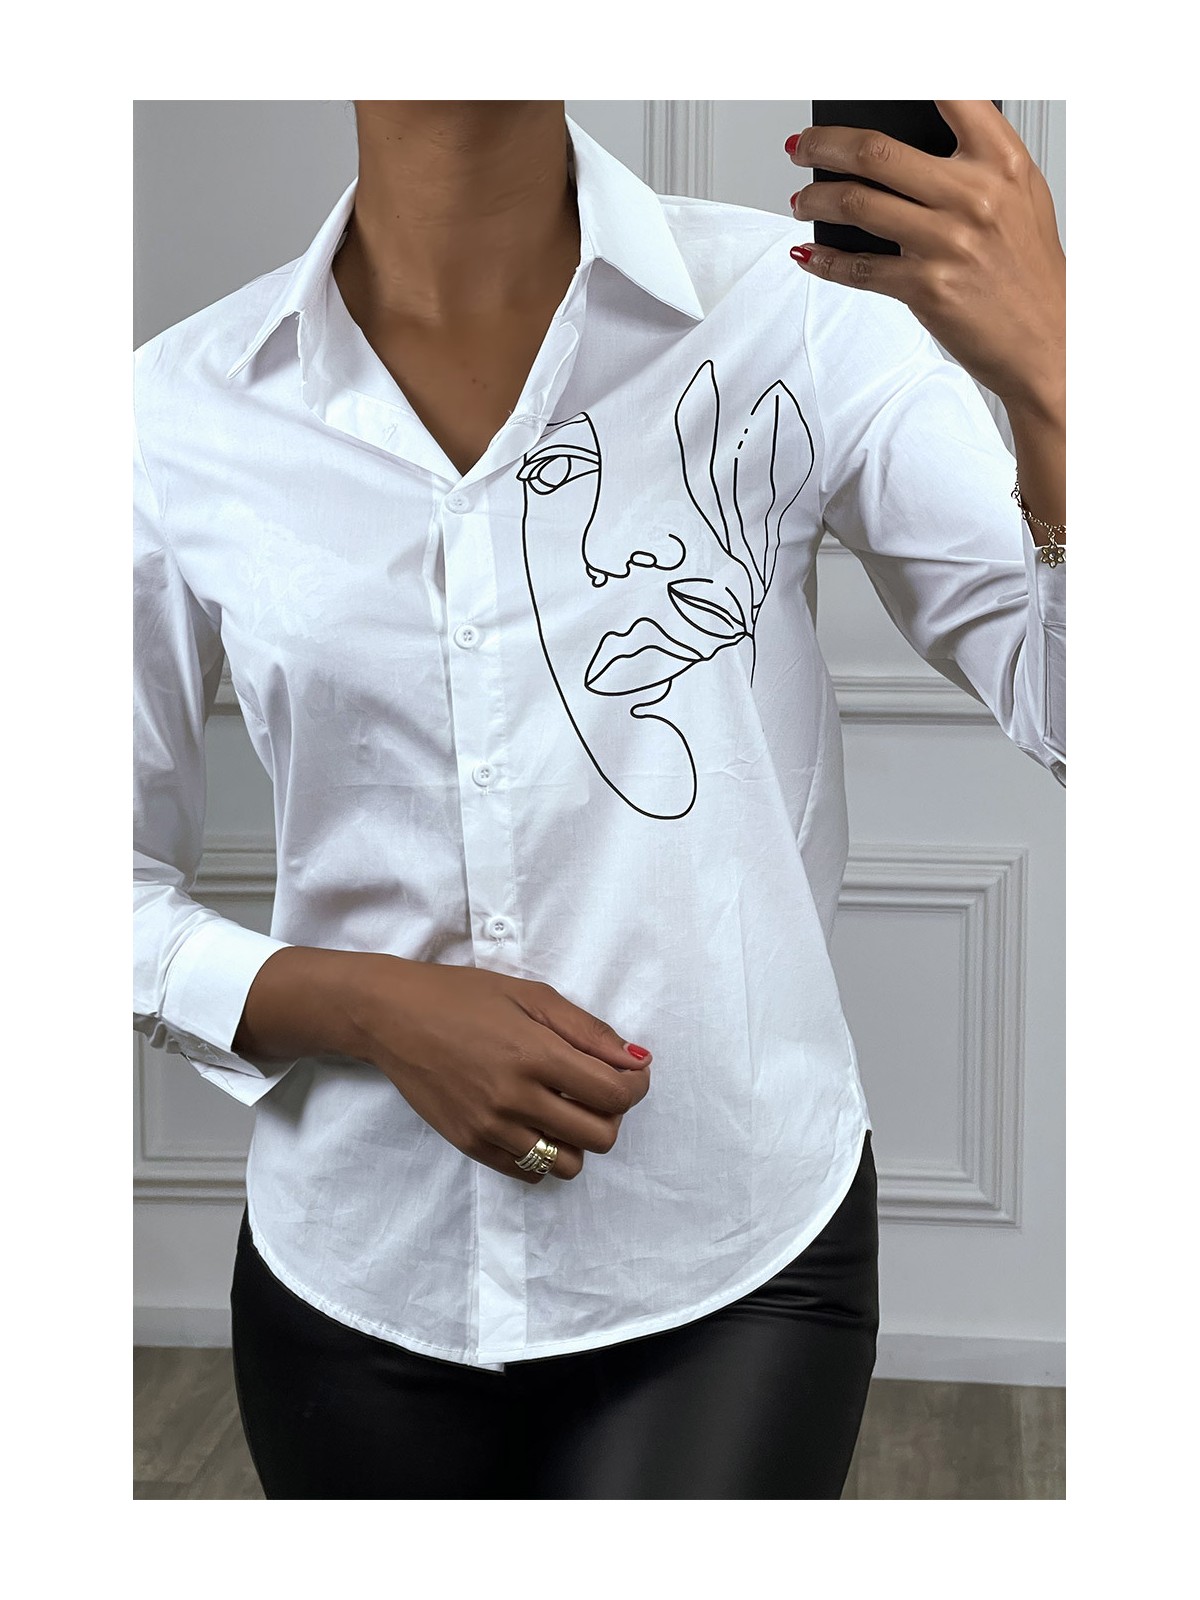 Chemise blanche avec dessin de visage en noir, à manches longues - 1